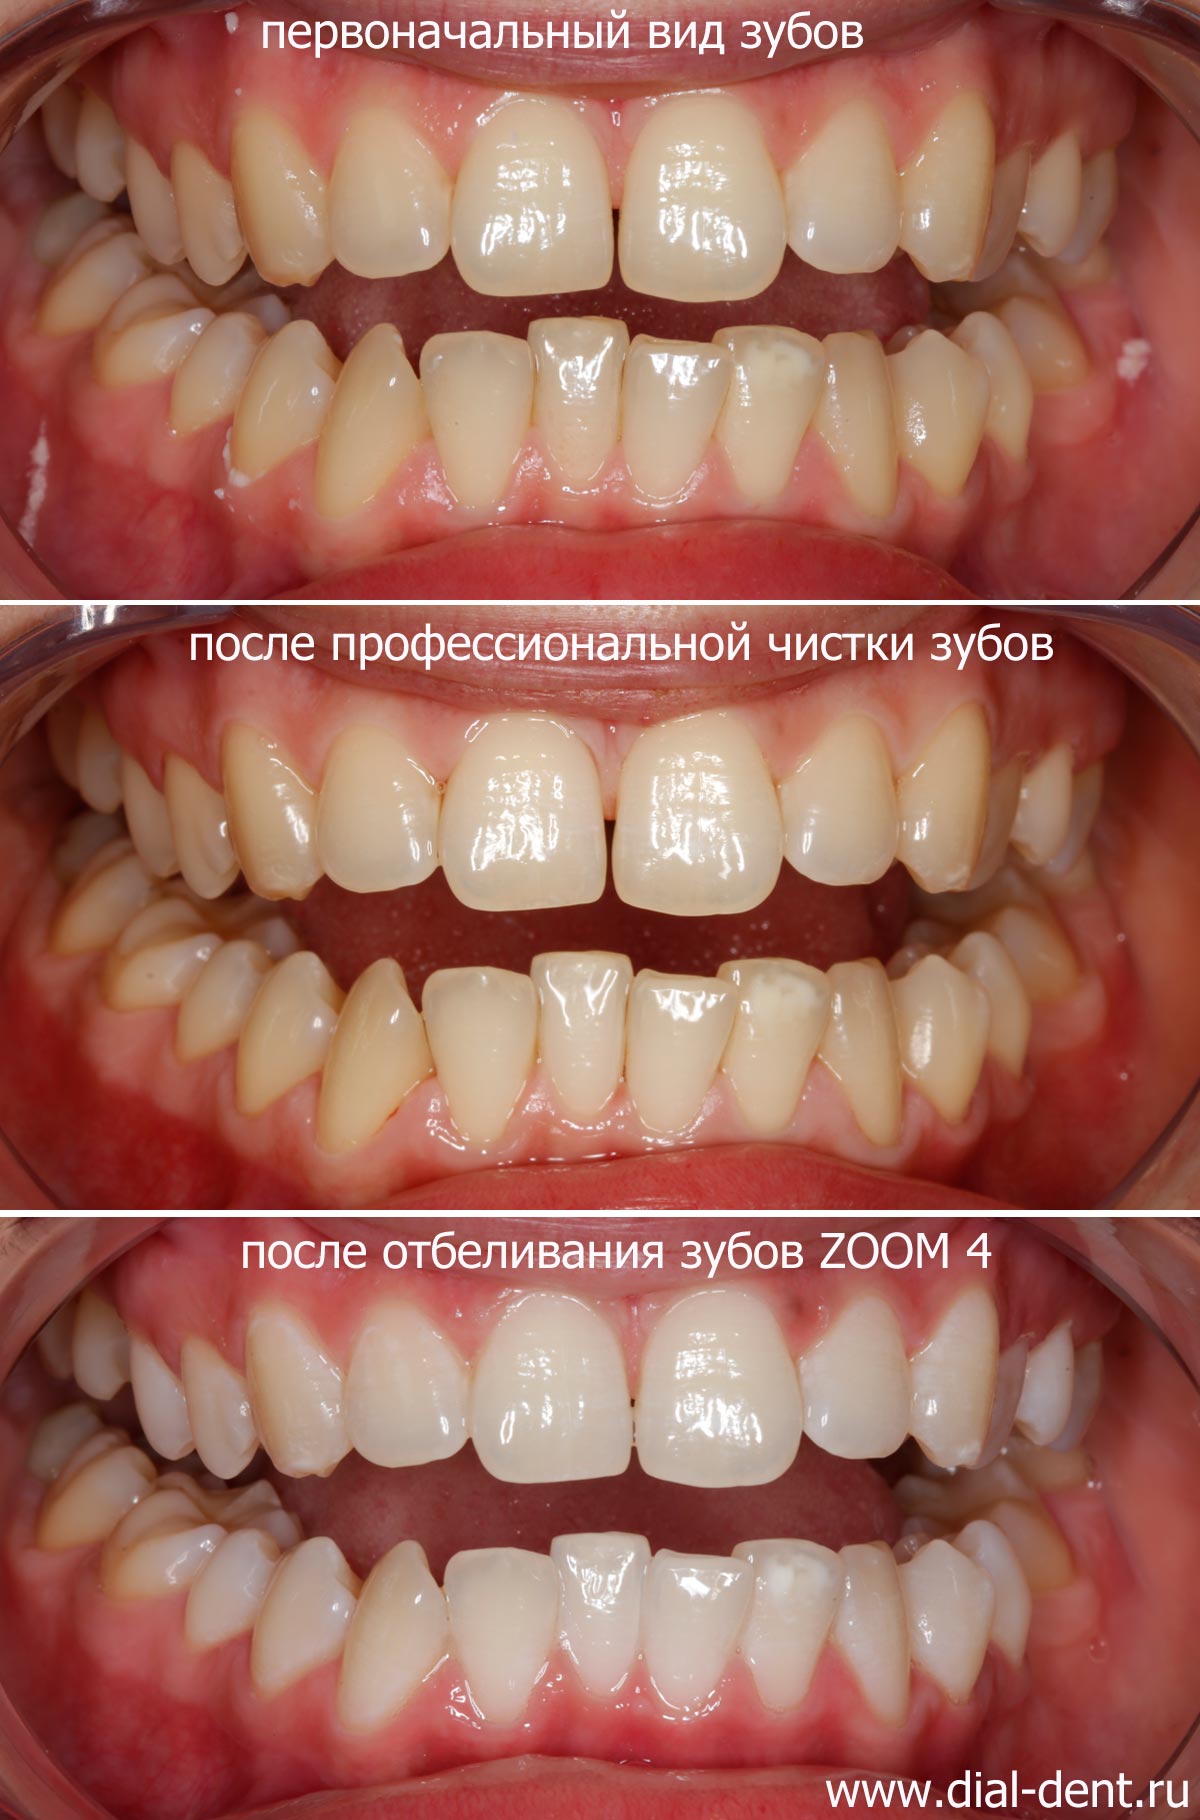 вид зубов при обращении, после чистки и после отбеливания